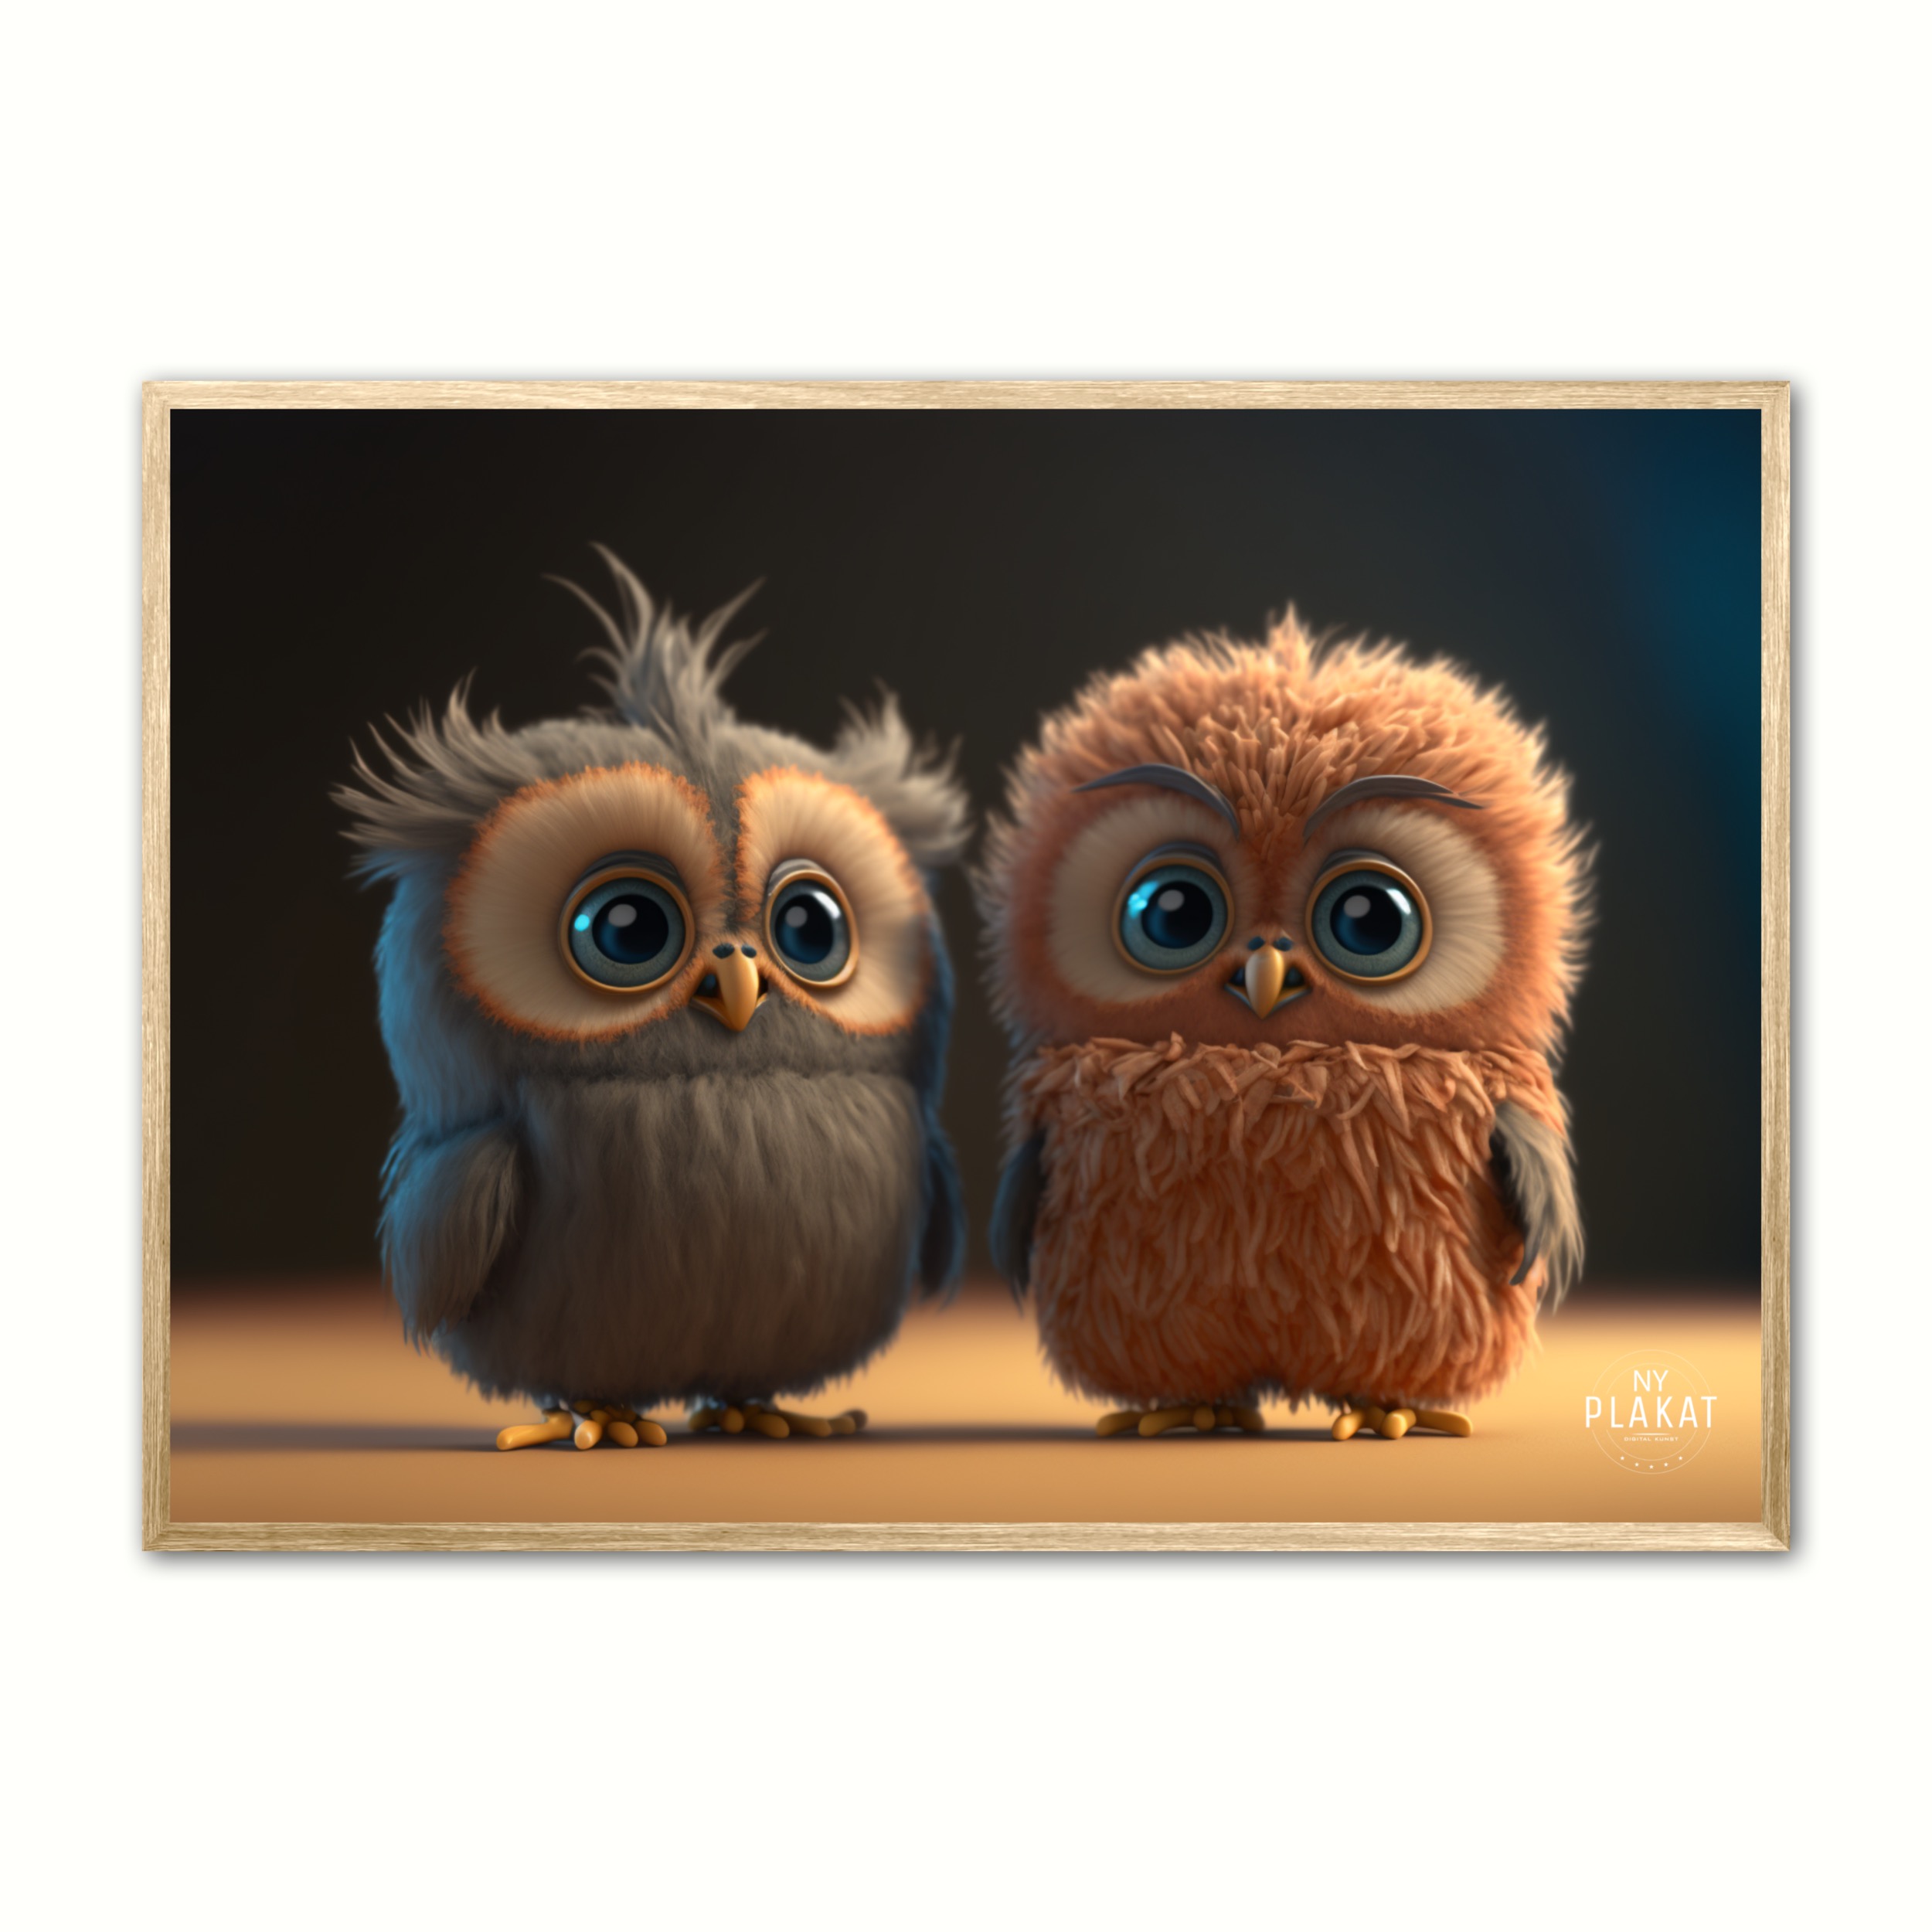 Billede af Plakat med Owltie and Owltoe - Ugle 21 x 29,7 cm (A4)